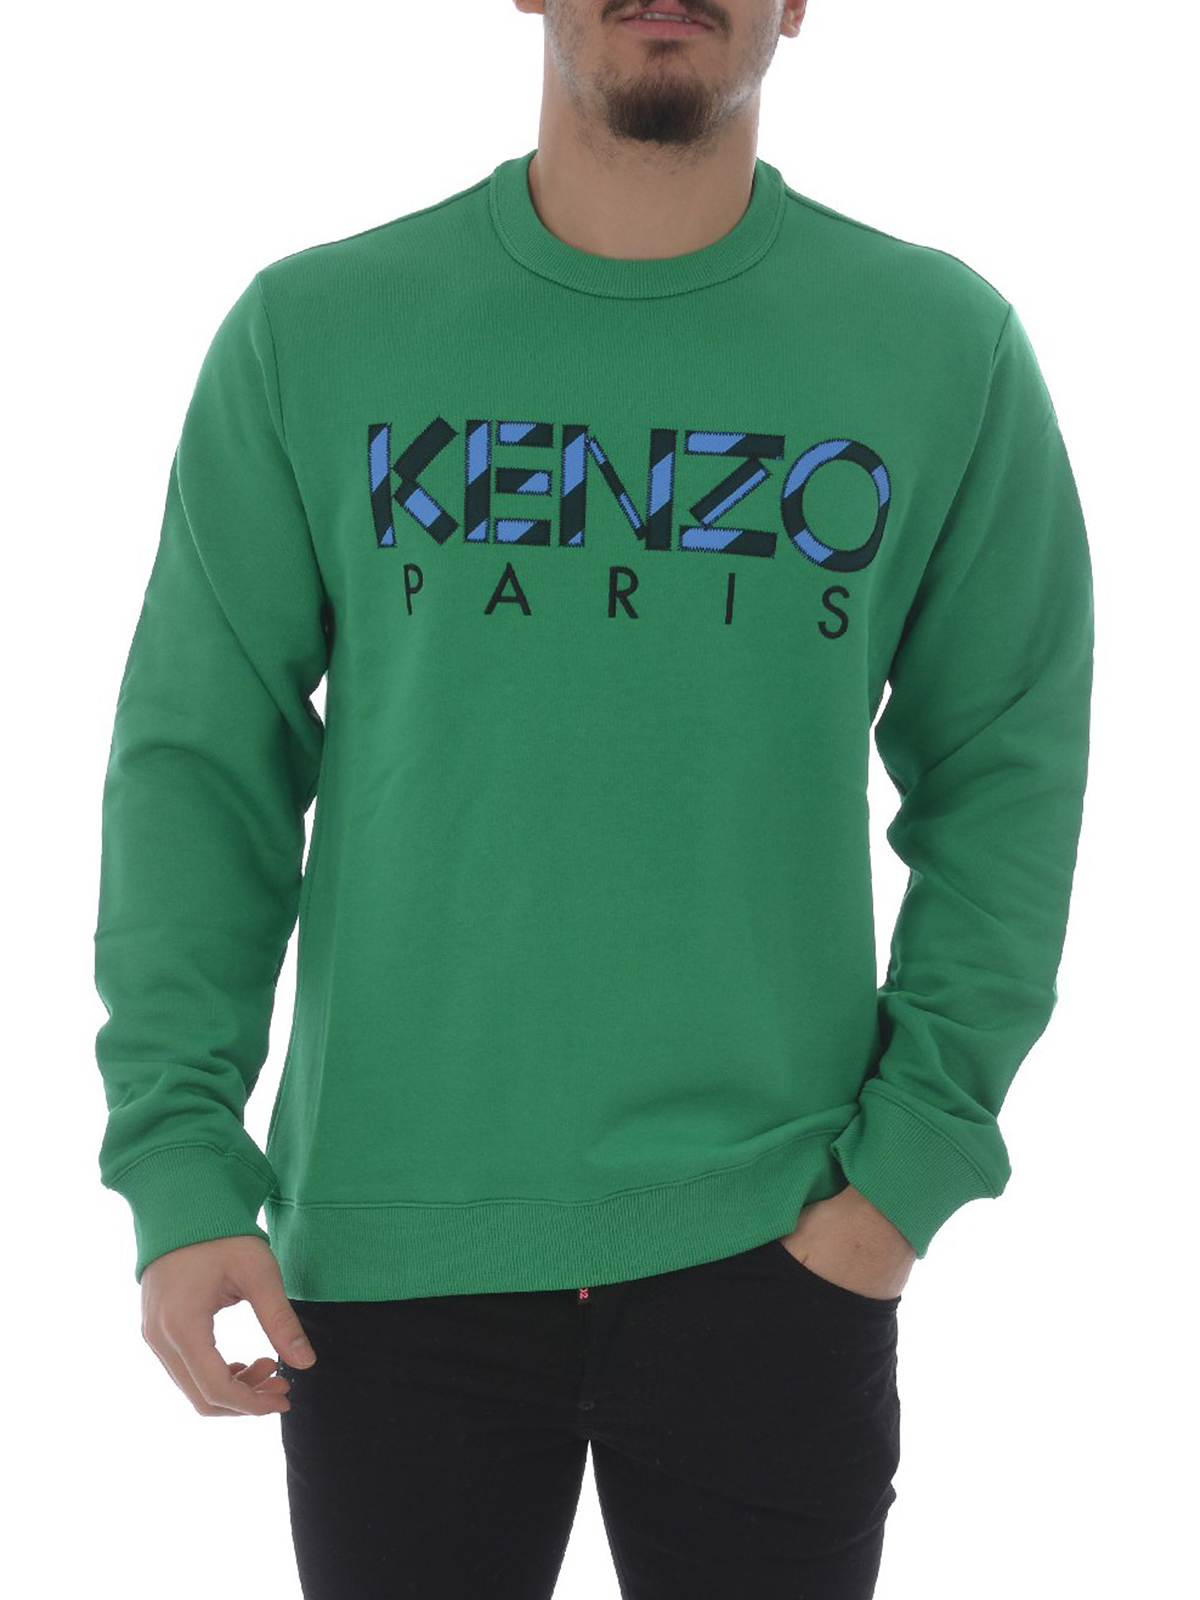 kenzo sweatshirt on sale